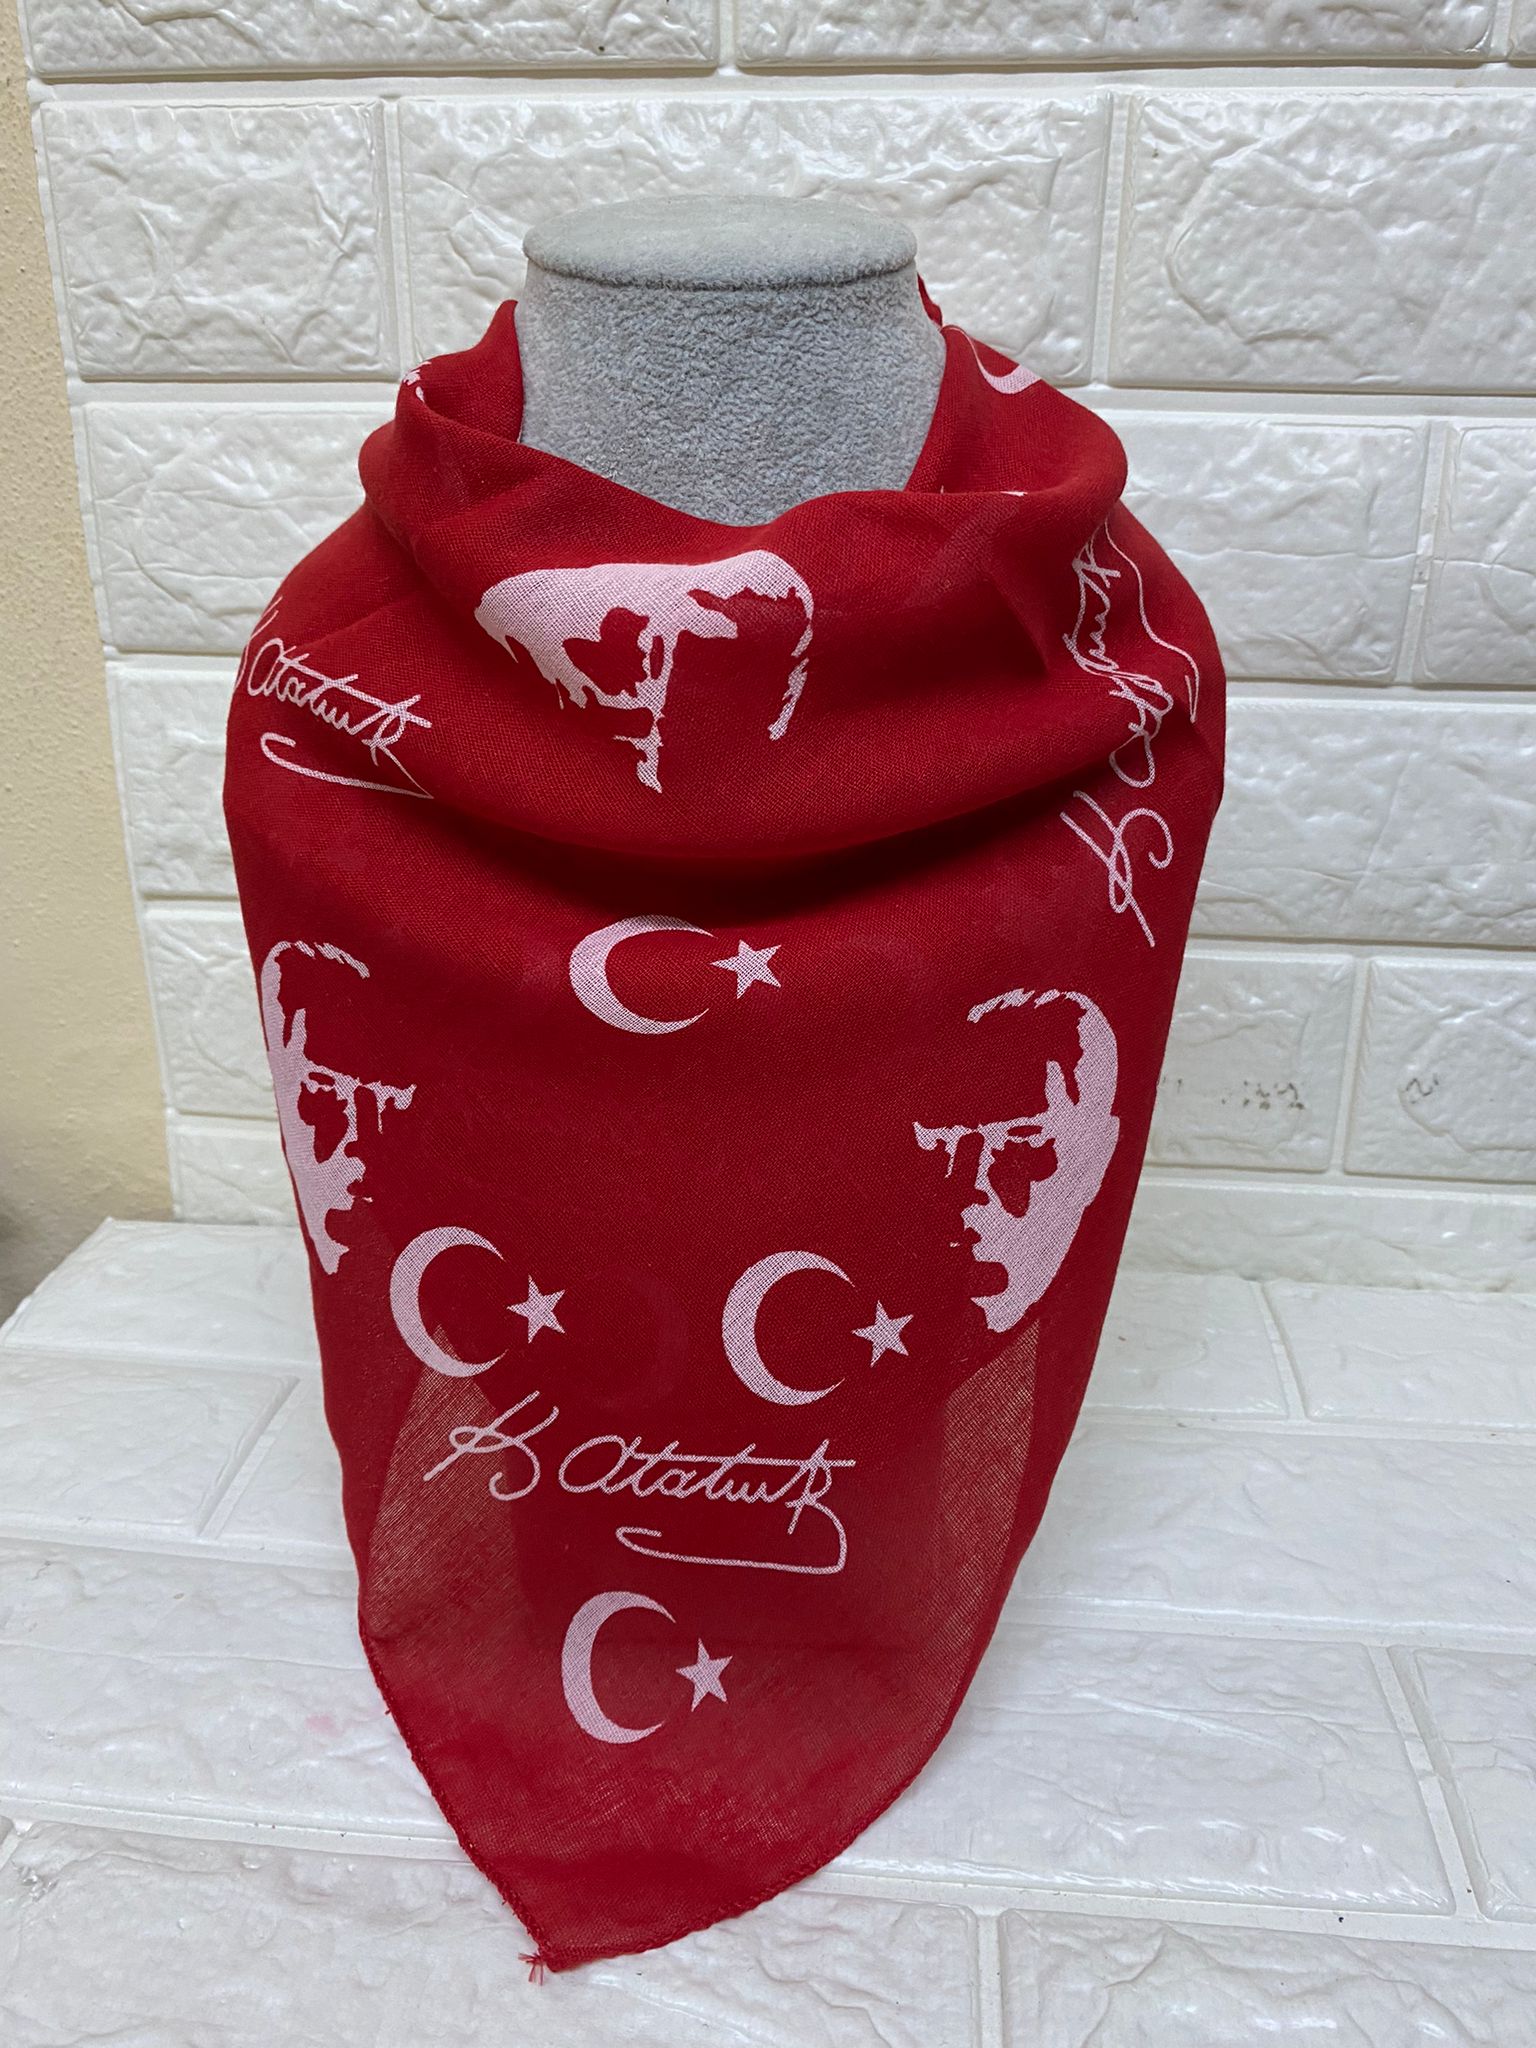 Kırmızı Ay Yıldız Ve Atatürk Silüetli Imzalı Pamuk Kumaş Fular - 23 Nisan, 29 Ekim, 19 Mayıs